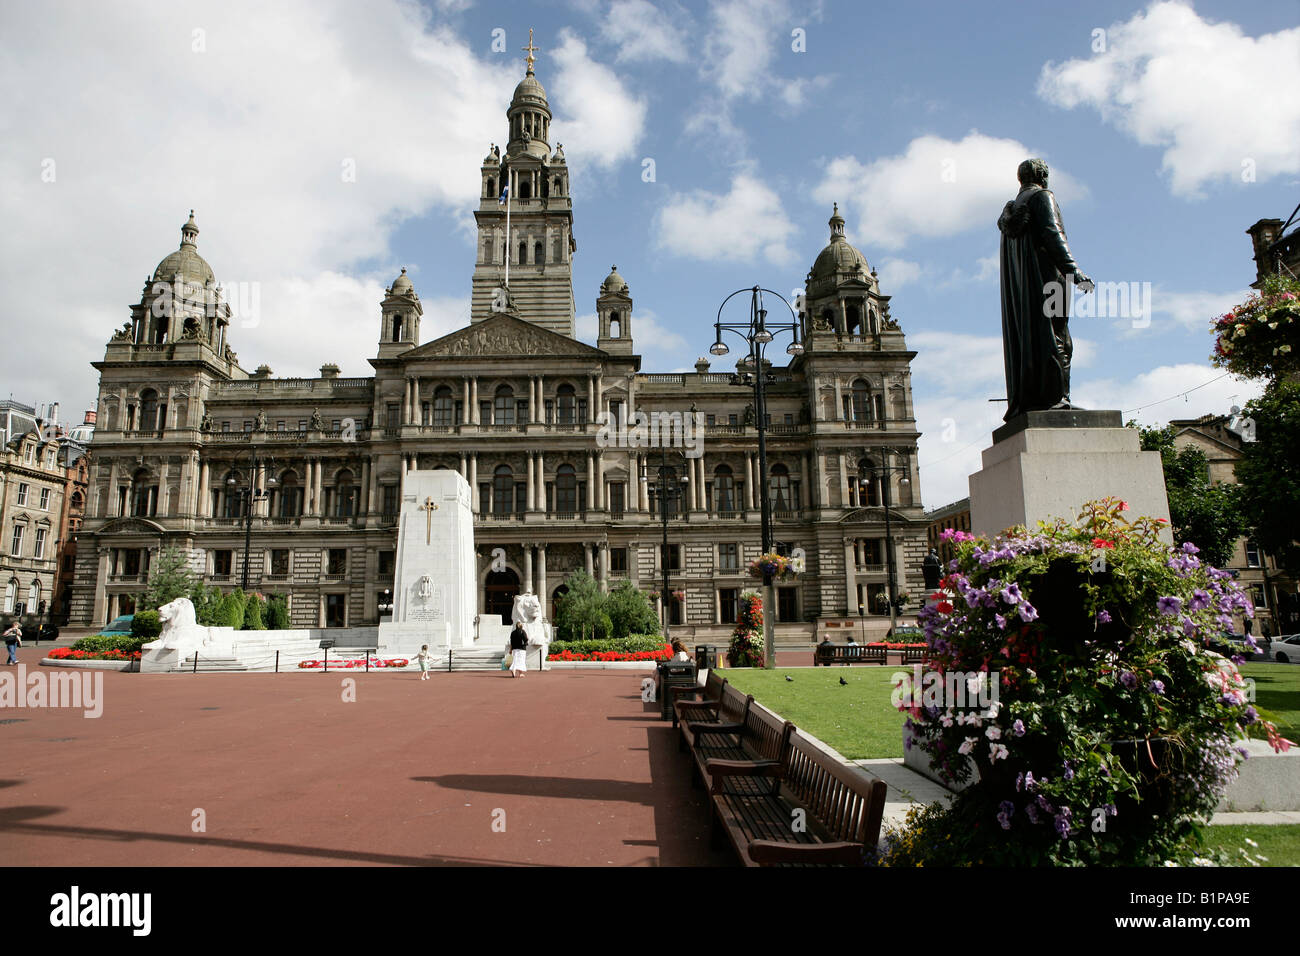 Stadt in Glasgow, Schottland. Das Kenotaph ersten Weltkrieg Denkmal in George Square mit der City Chambers im Hintergrund. Stockfoto